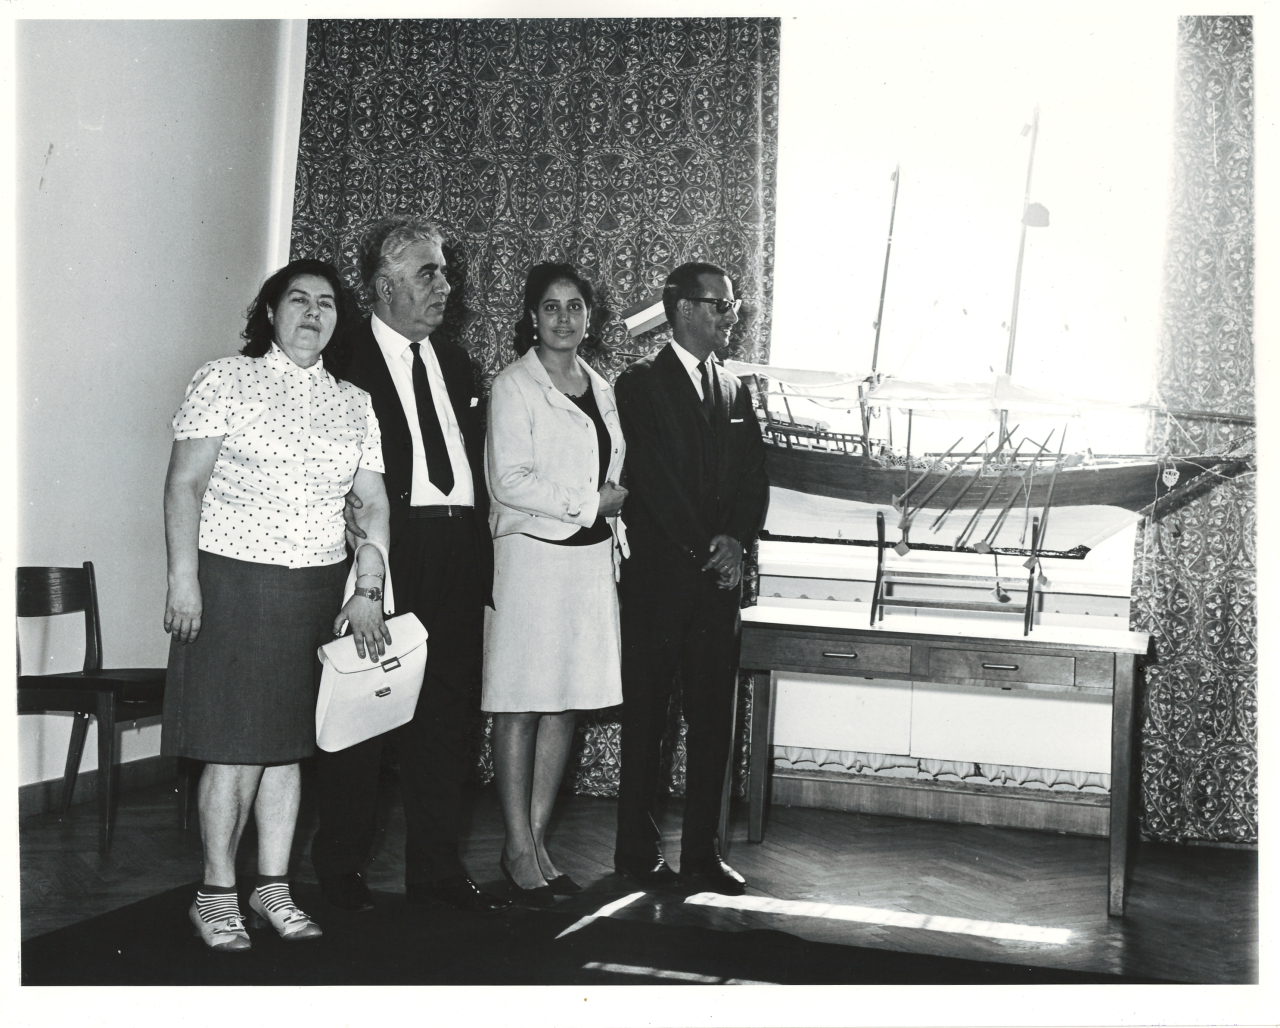 Լուսանկար. Ա. Խաչատրյանը կնոջ՝ Ն. Մակարովայի, ԽՍՀՄ-ում Քուվեյթի դեսպան Ֆ. Էլ Սալեխի և նրա տիկնոջ հետ, Մոսկվայում Քուվեյթի դեսպանատանը